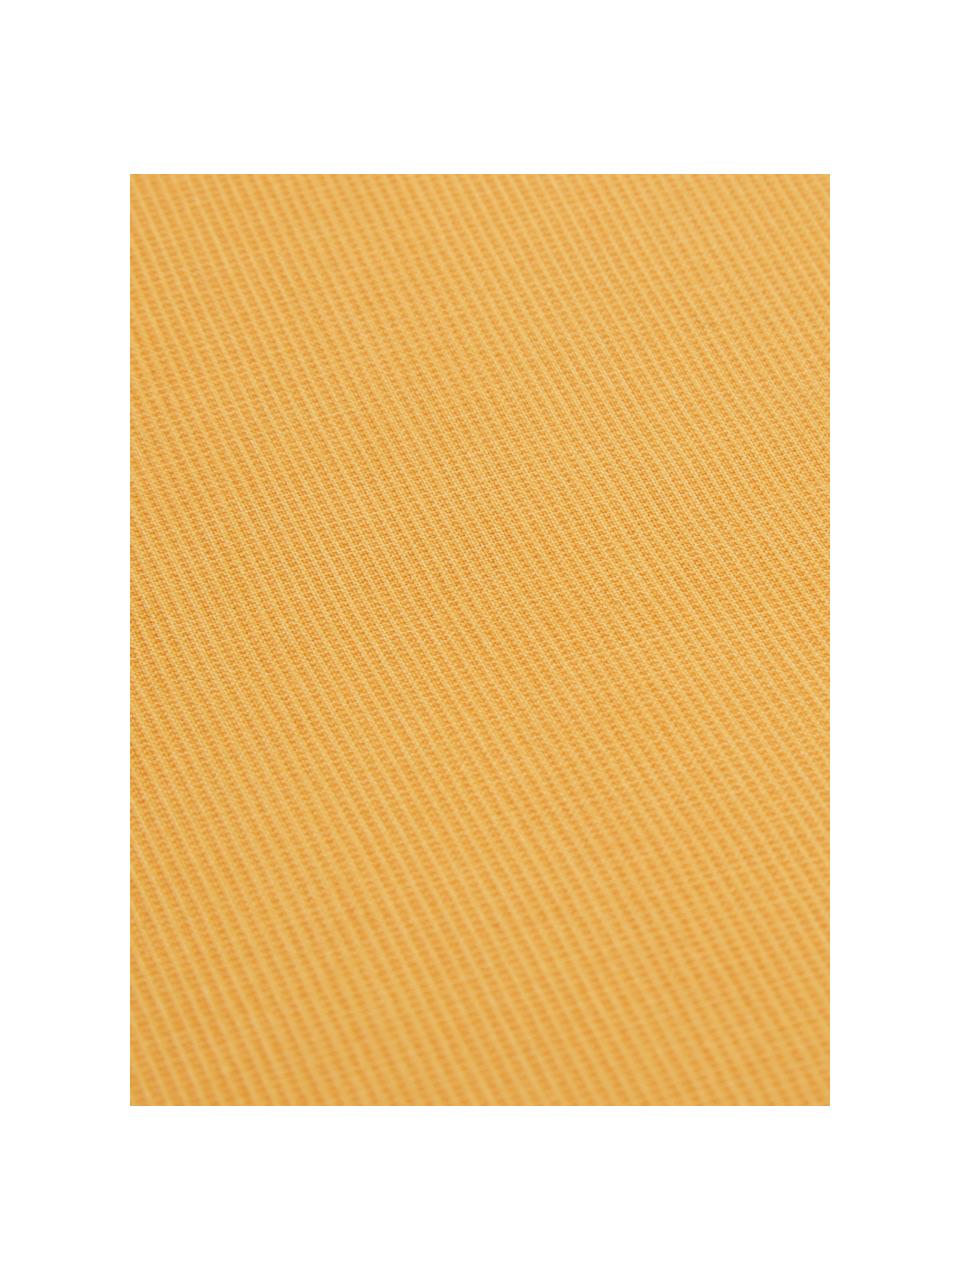 Baumwoll-Bettwäsche Soft mit feinem Struktur-Print, Webart: Renforcé Renforcé besteht, Ockergelb, 135 x 200 cm + 1 Kissen 80 x 80 cm